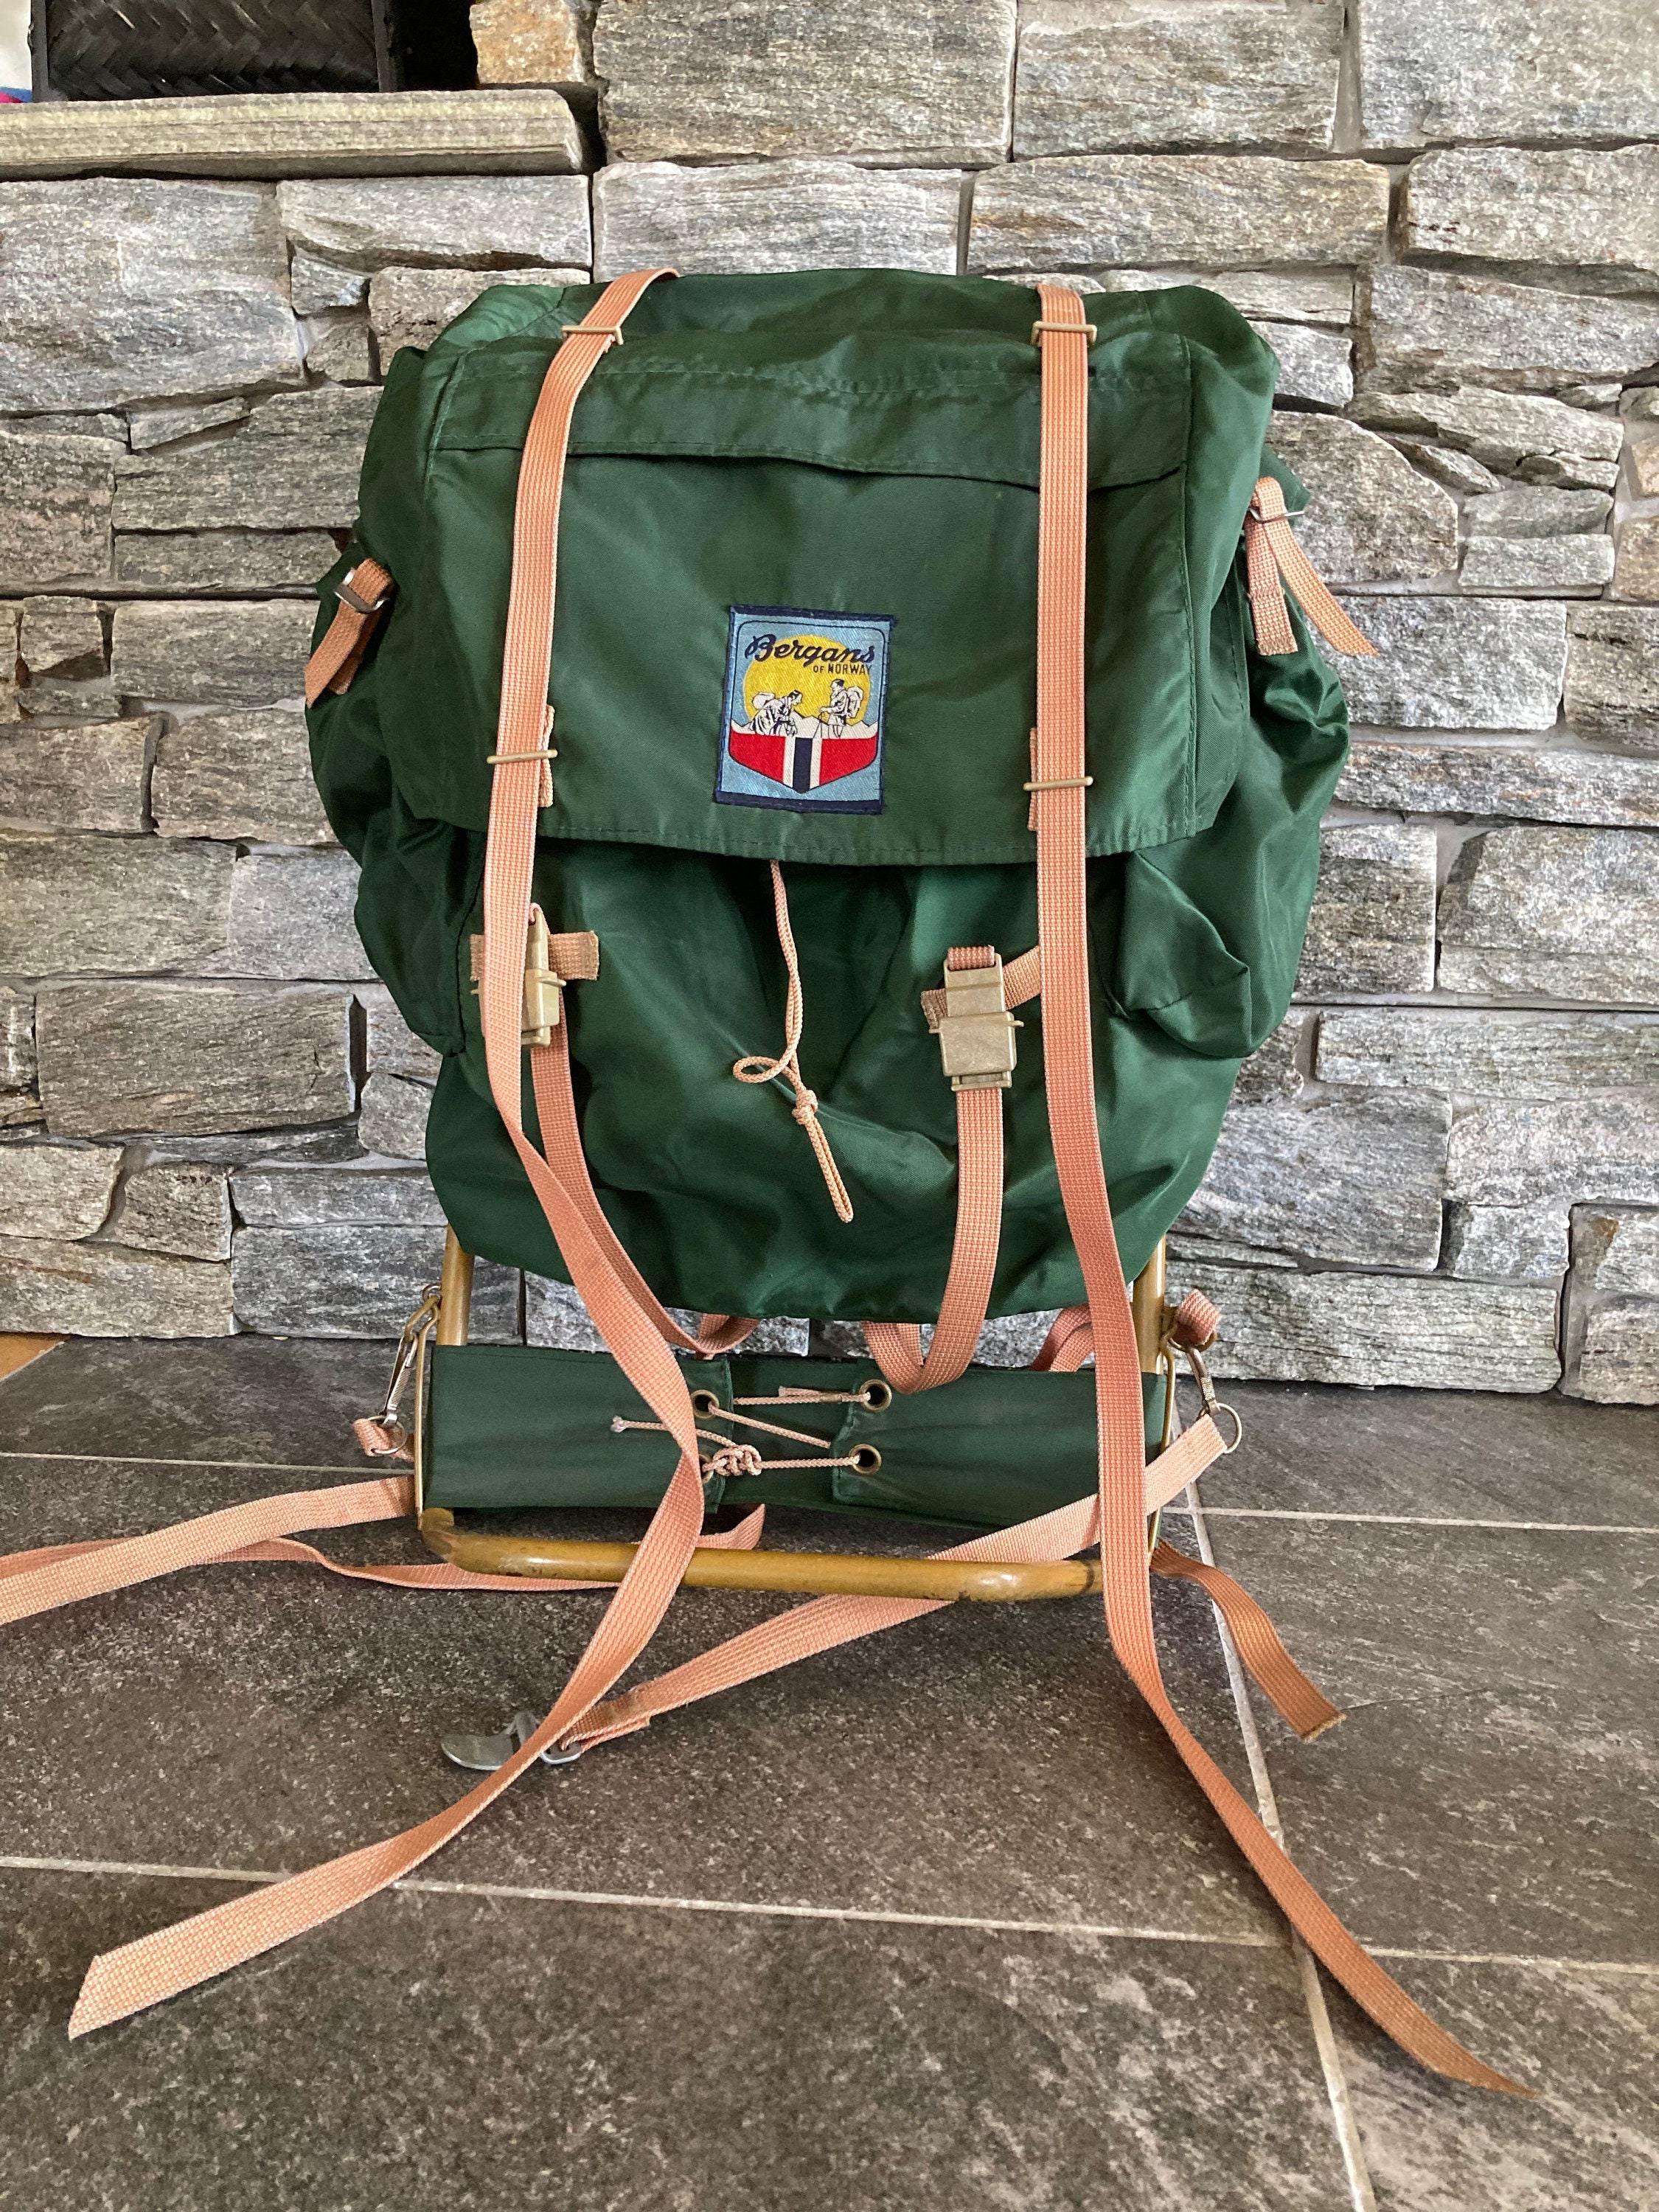 bloemblad Asser Afstoting Norwegian Mountain Backpack Bergans of Norway Hiking - Etsy